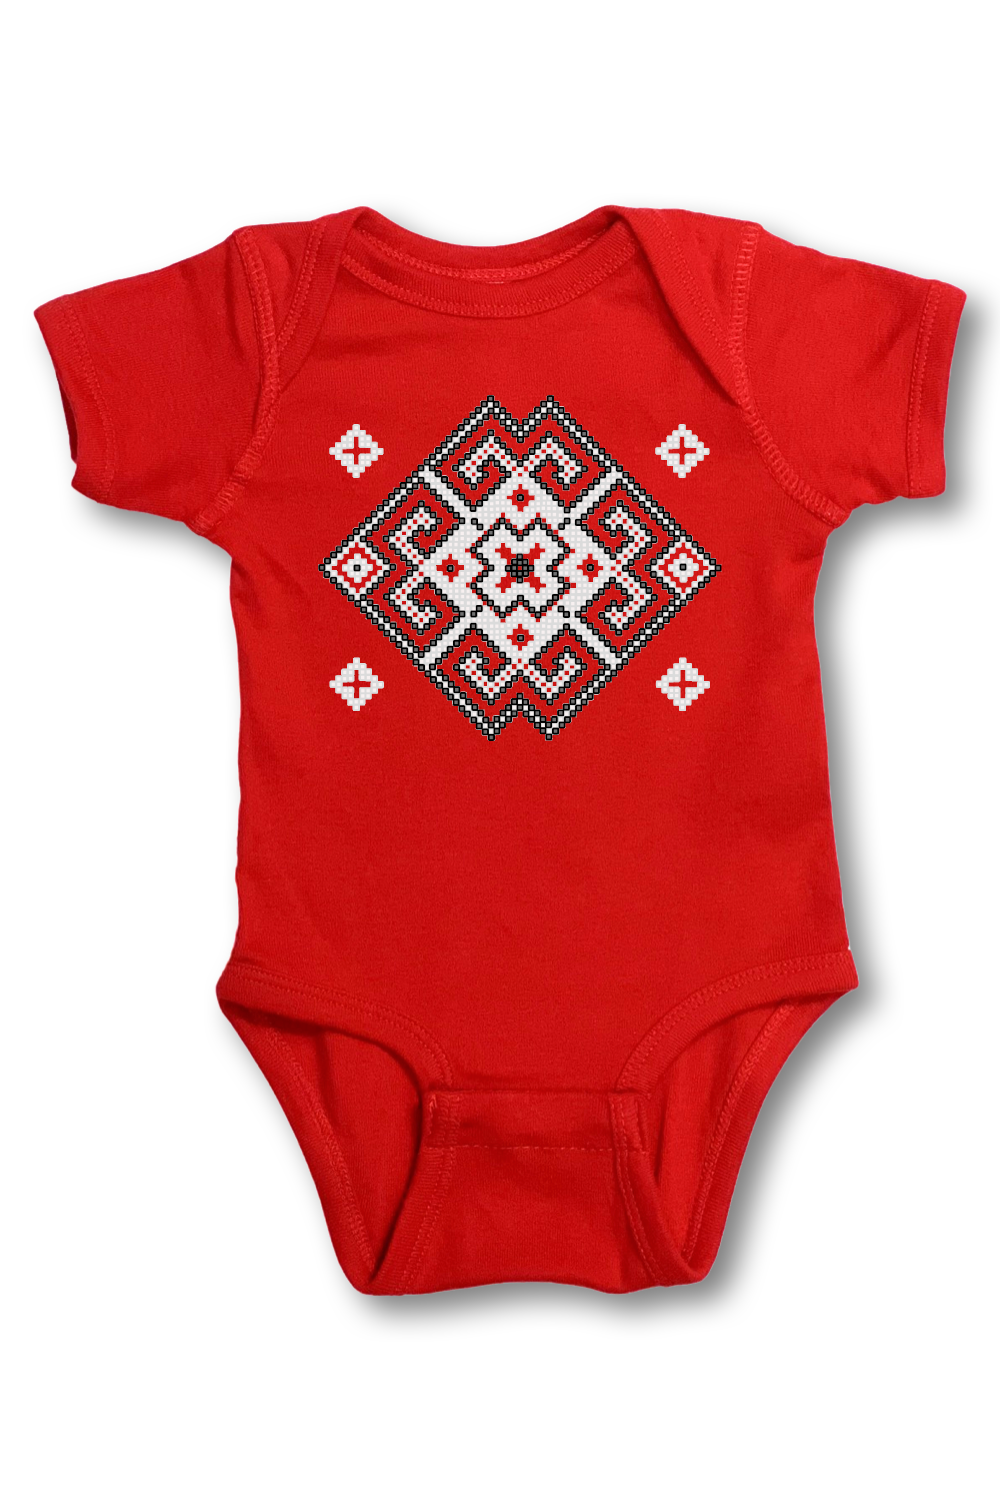 Infant onesie "Vortex" red